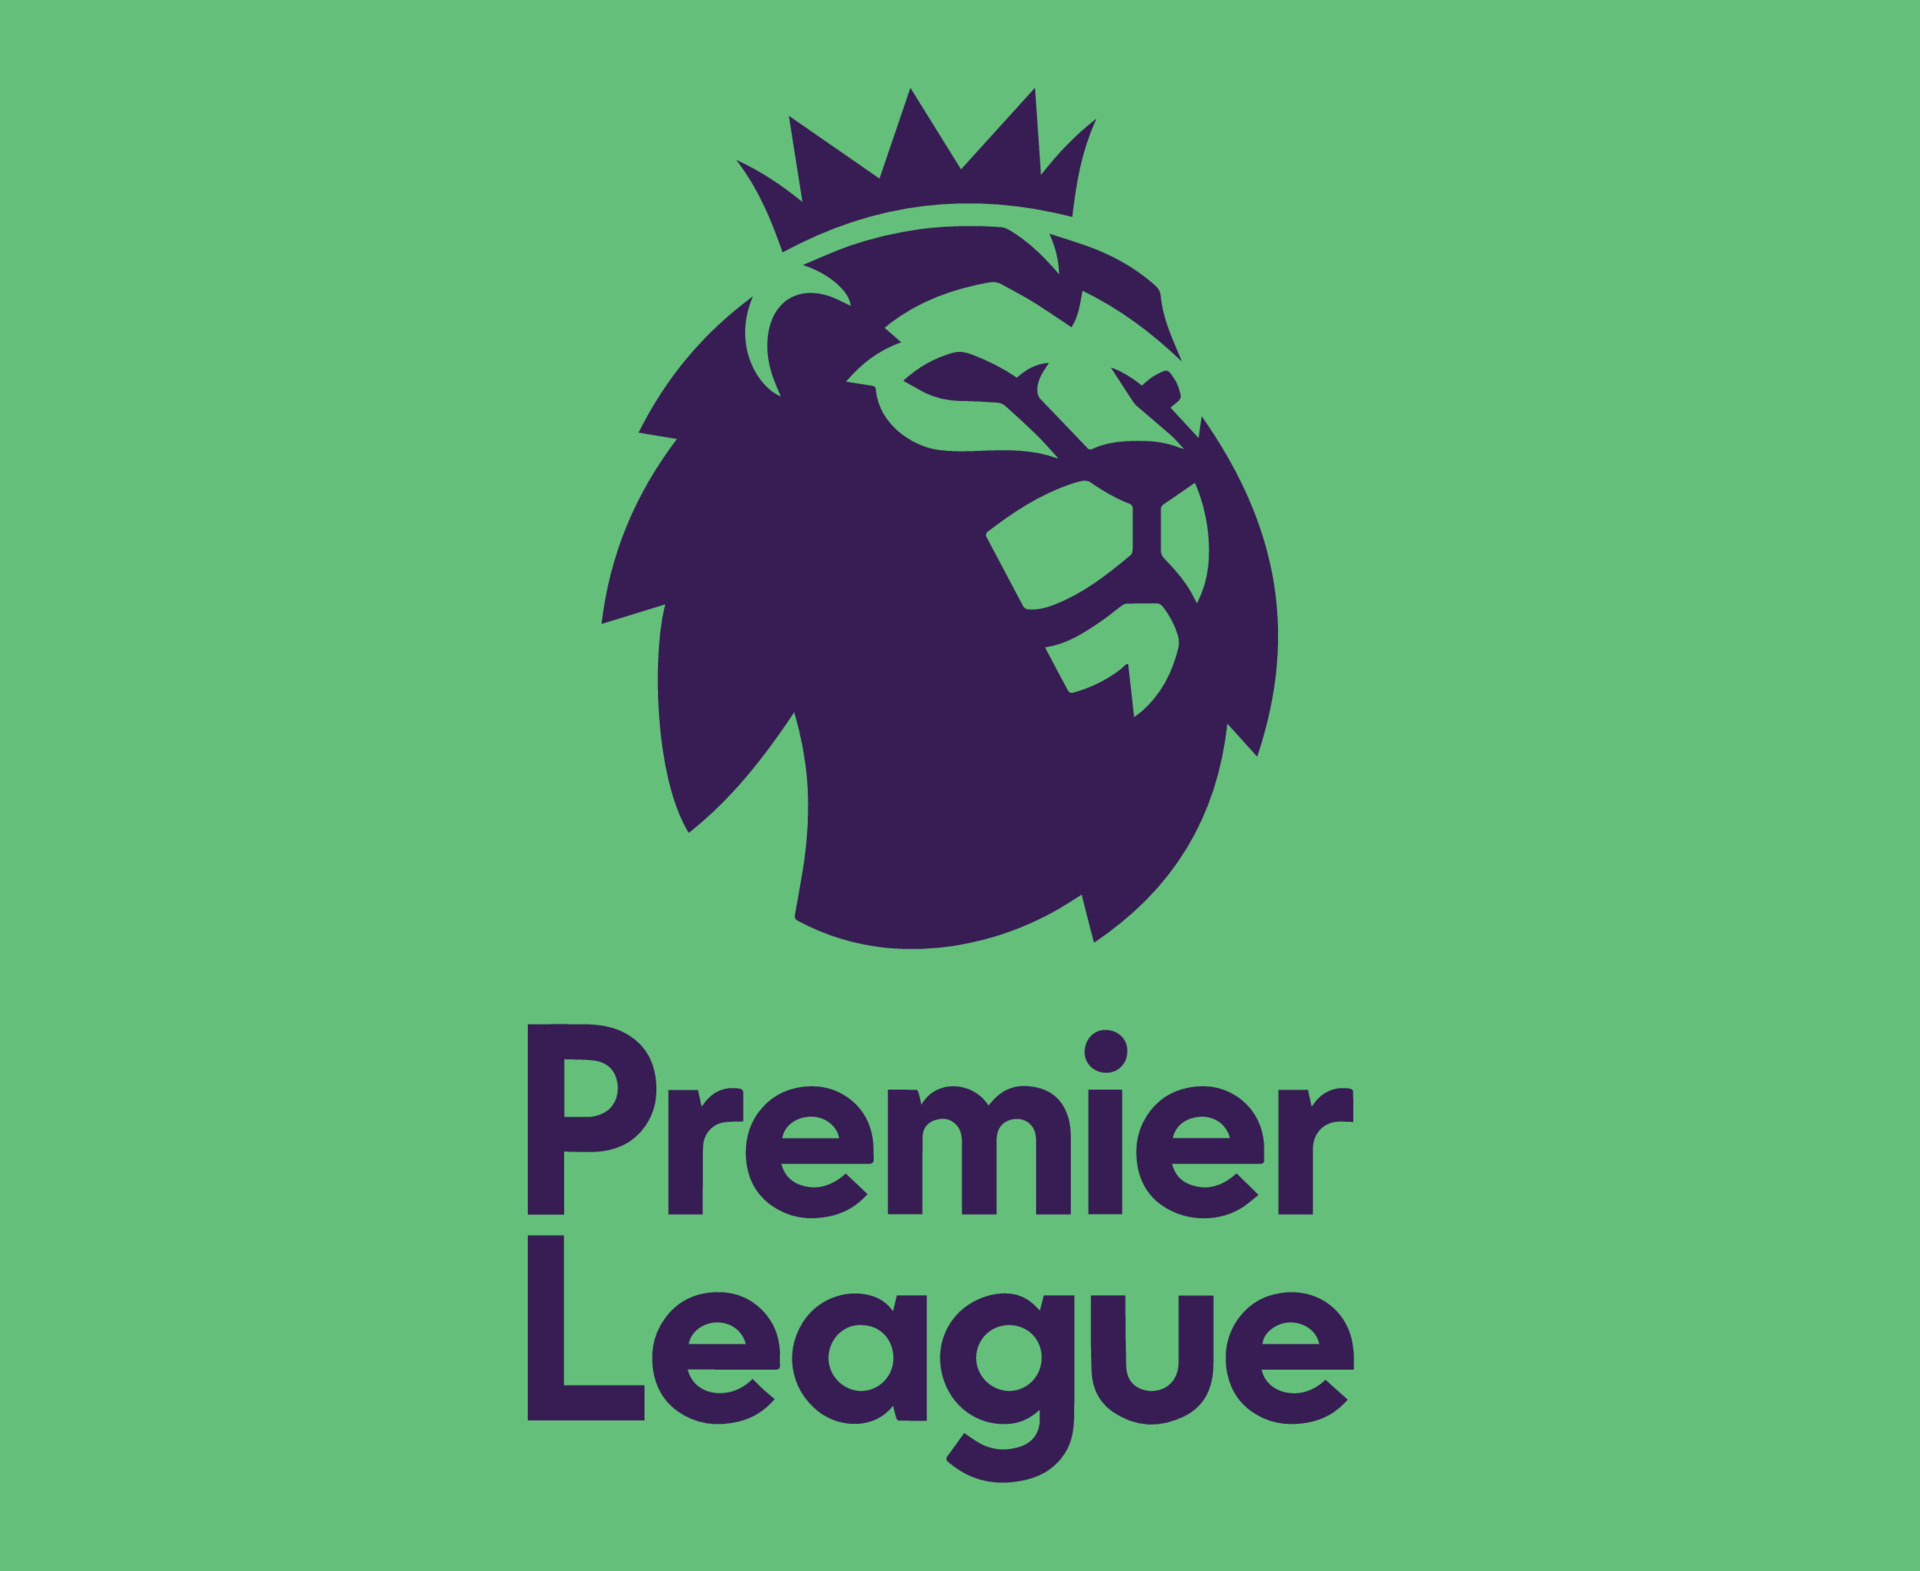 Làm thế nào để tạo nên một thiết kế logo đẹp mắt cho Premier League? Hãy thử qua các công cụ và tính năng của Microsoft Teams logo design. Bạn sẽ được trải nghiệm những công nghệ tiên tiến nhất được sử dụng trong ngành thiết kế, và thậm chí còn tạo ra được những thiết kế logo độc đáo của riêng mình.